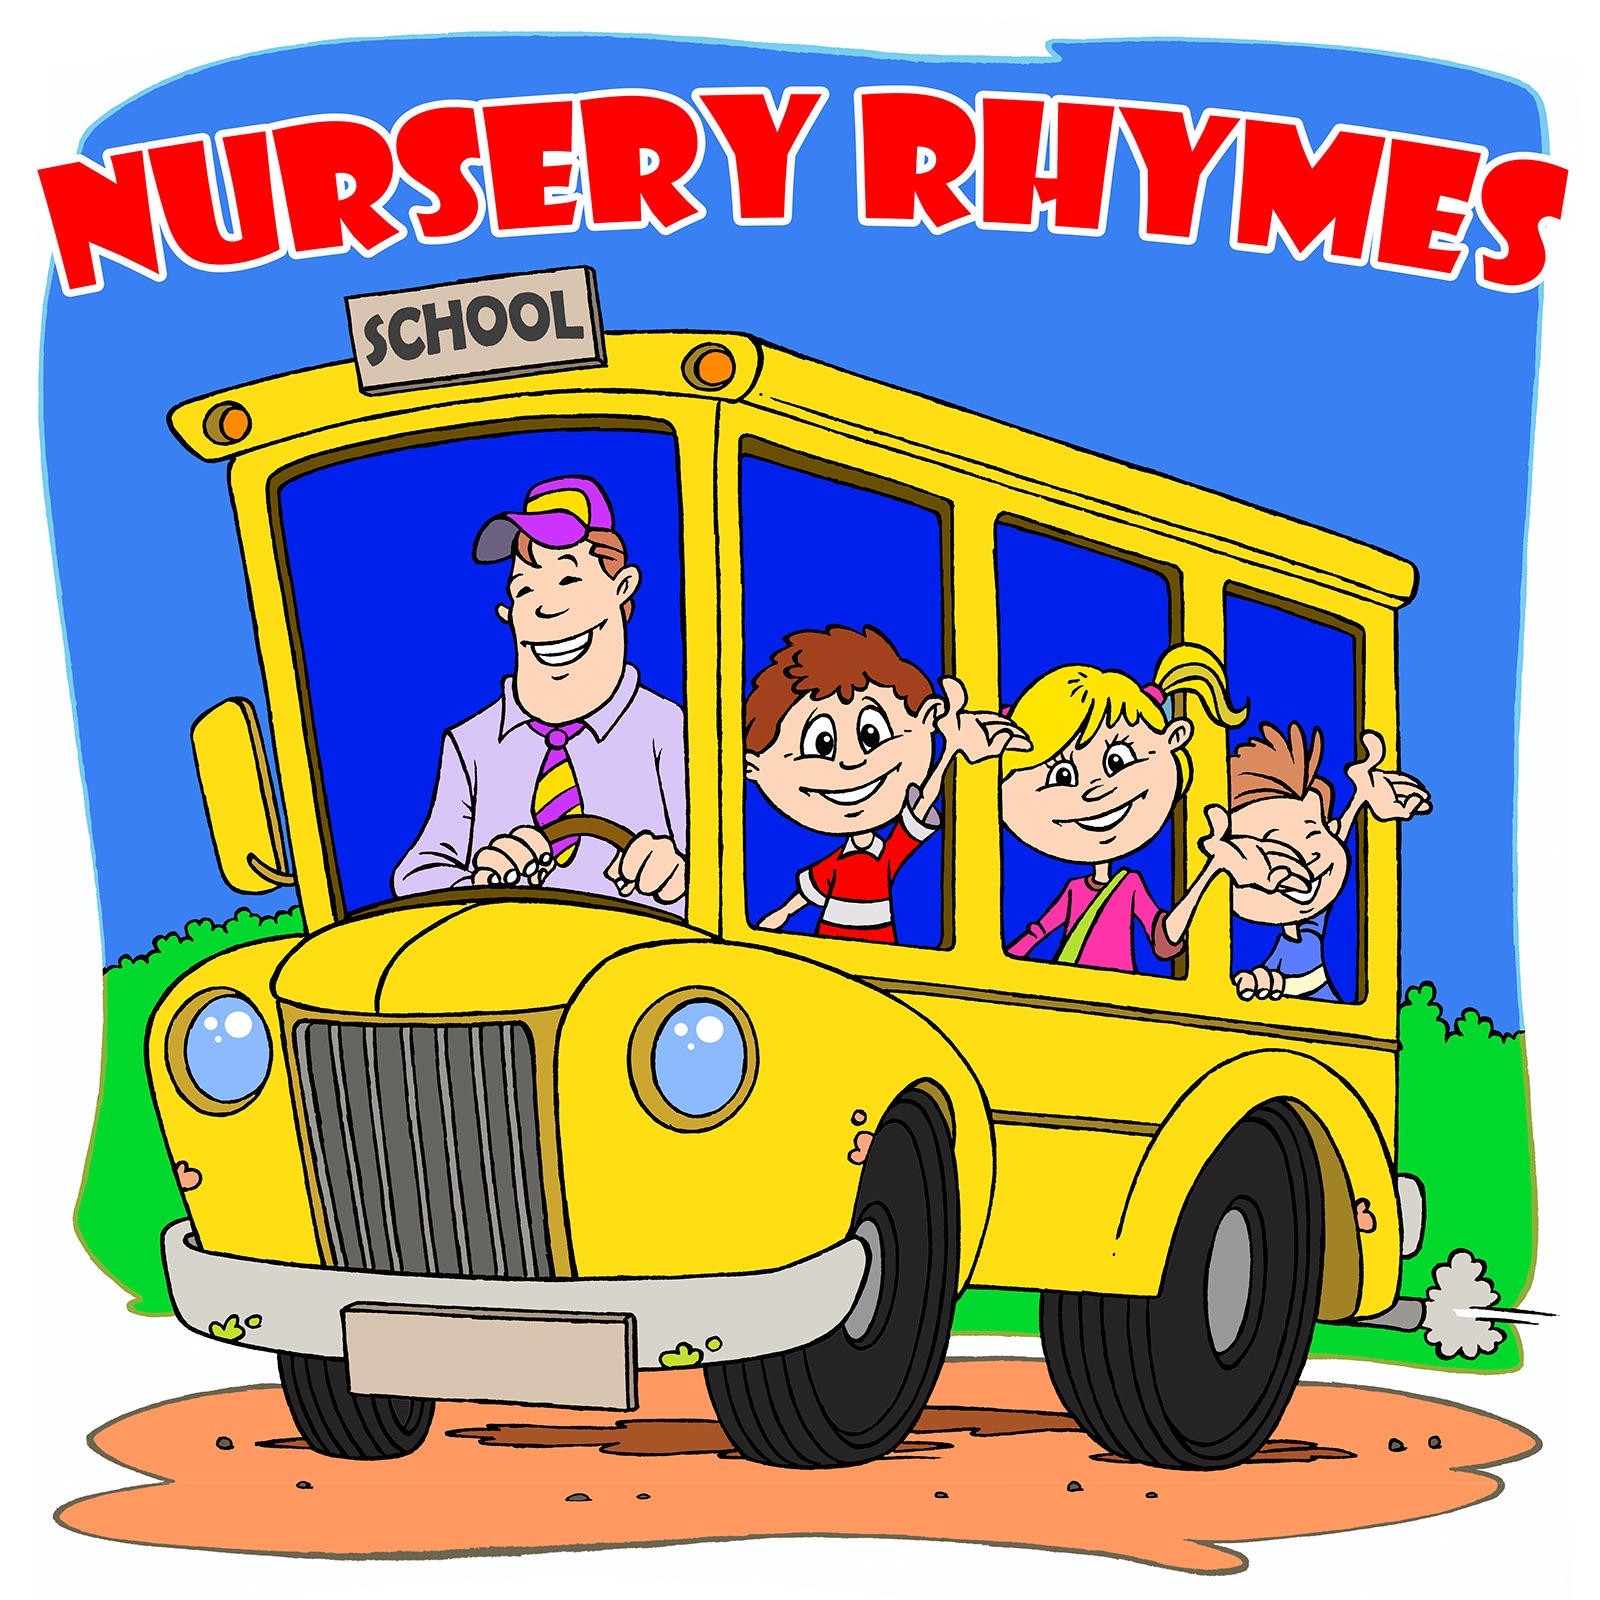 nursery rhymes mp3 album free download